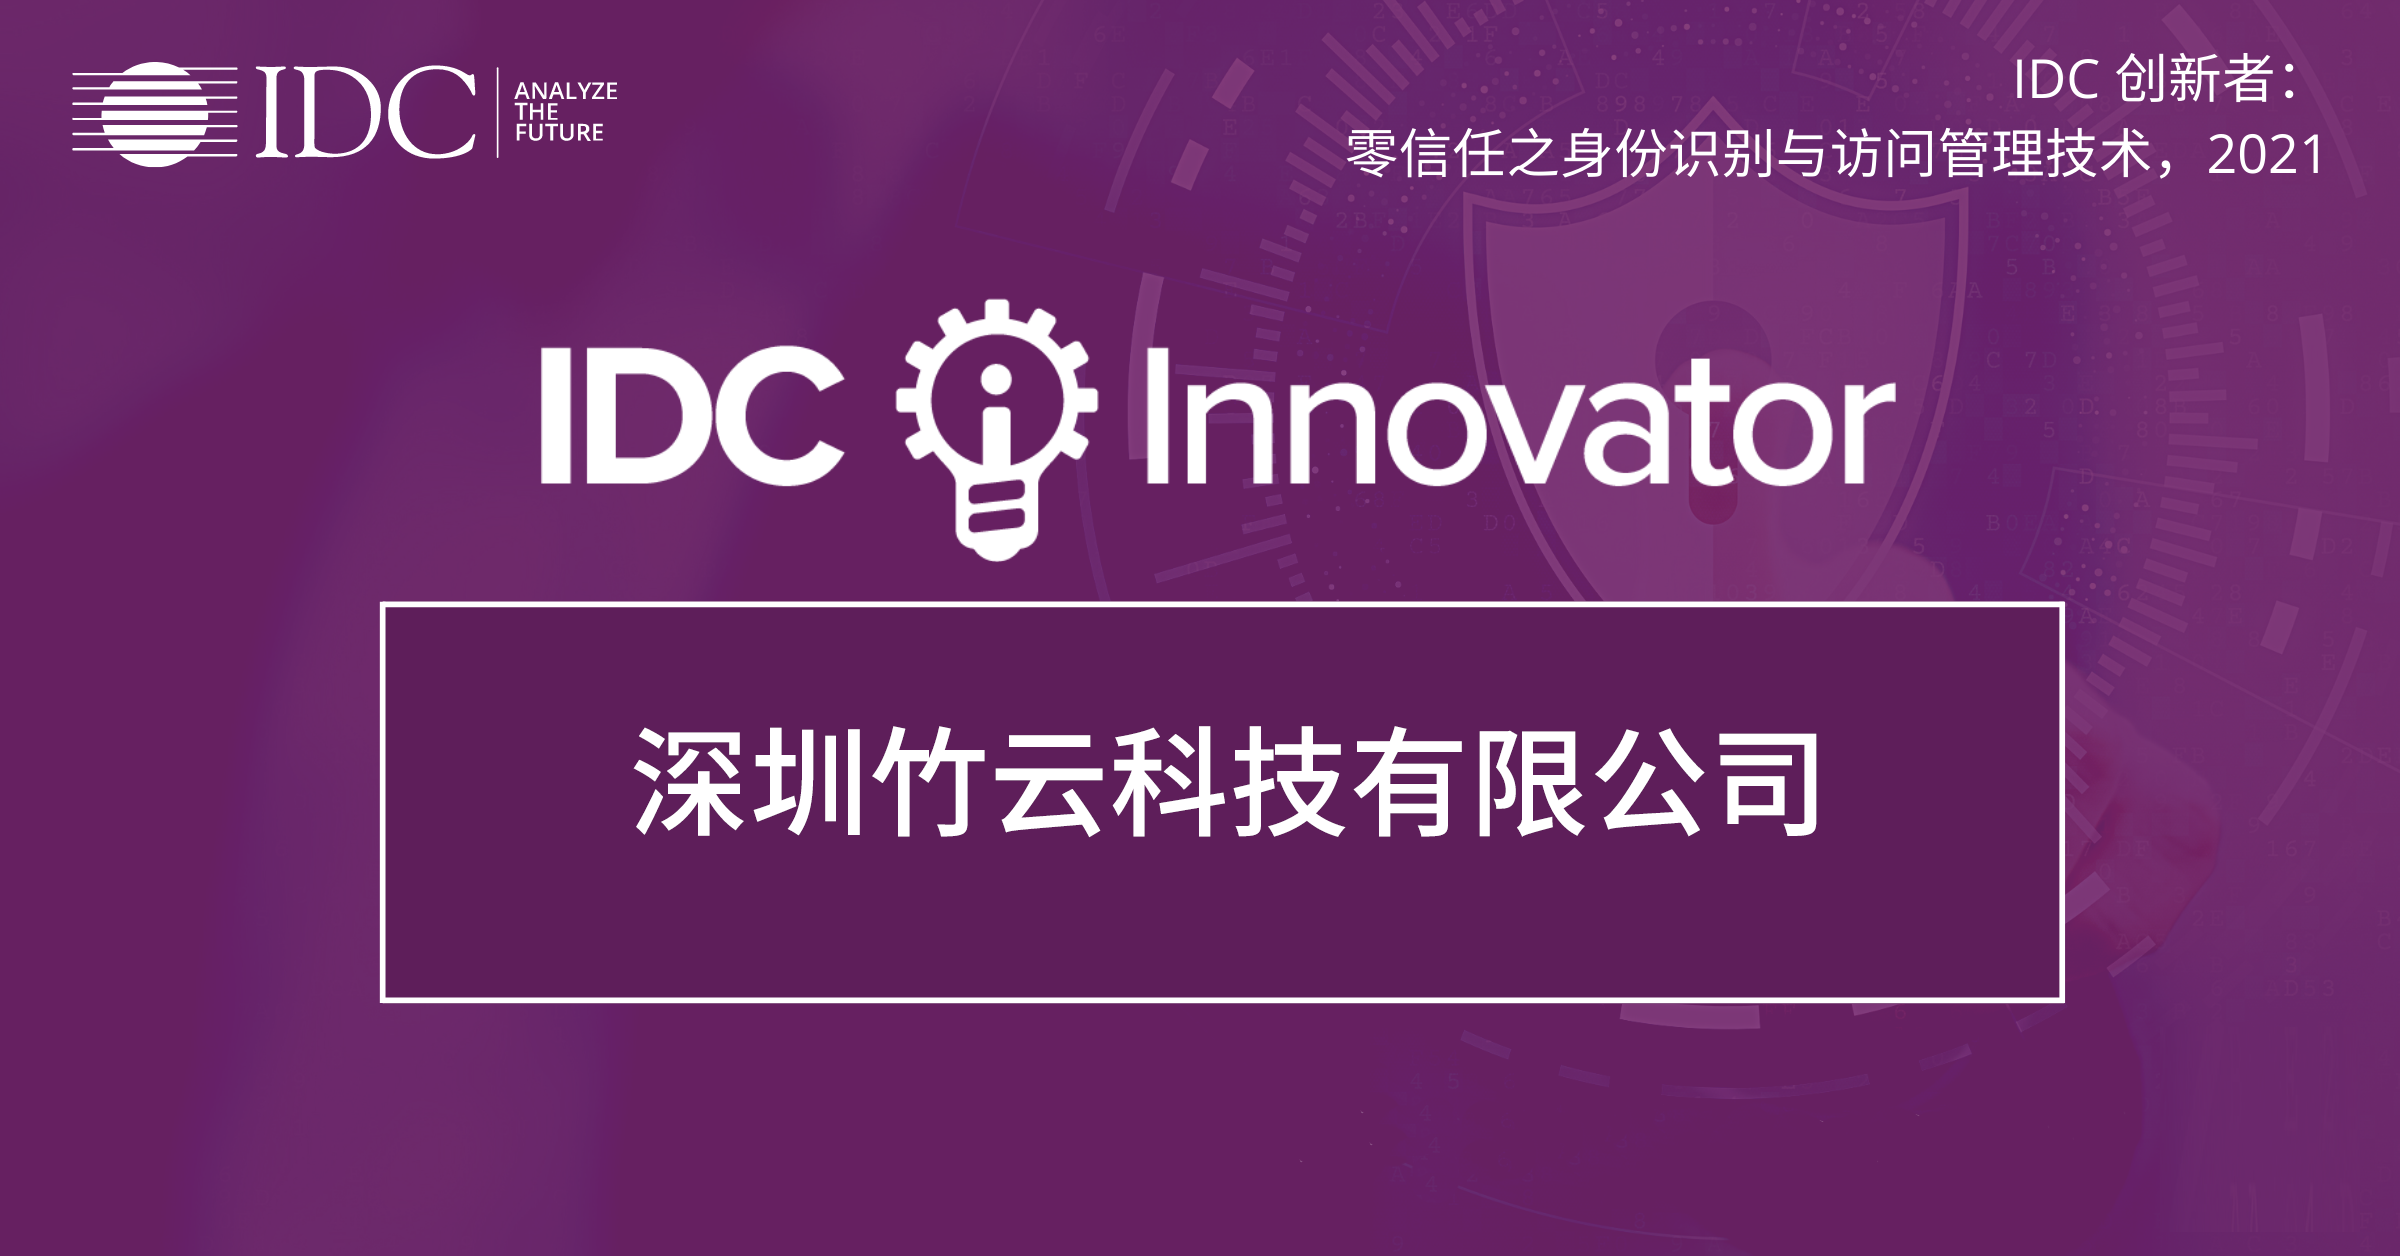 竹云入选IDC零信任之身份识别与访问管理技术领域的创新者